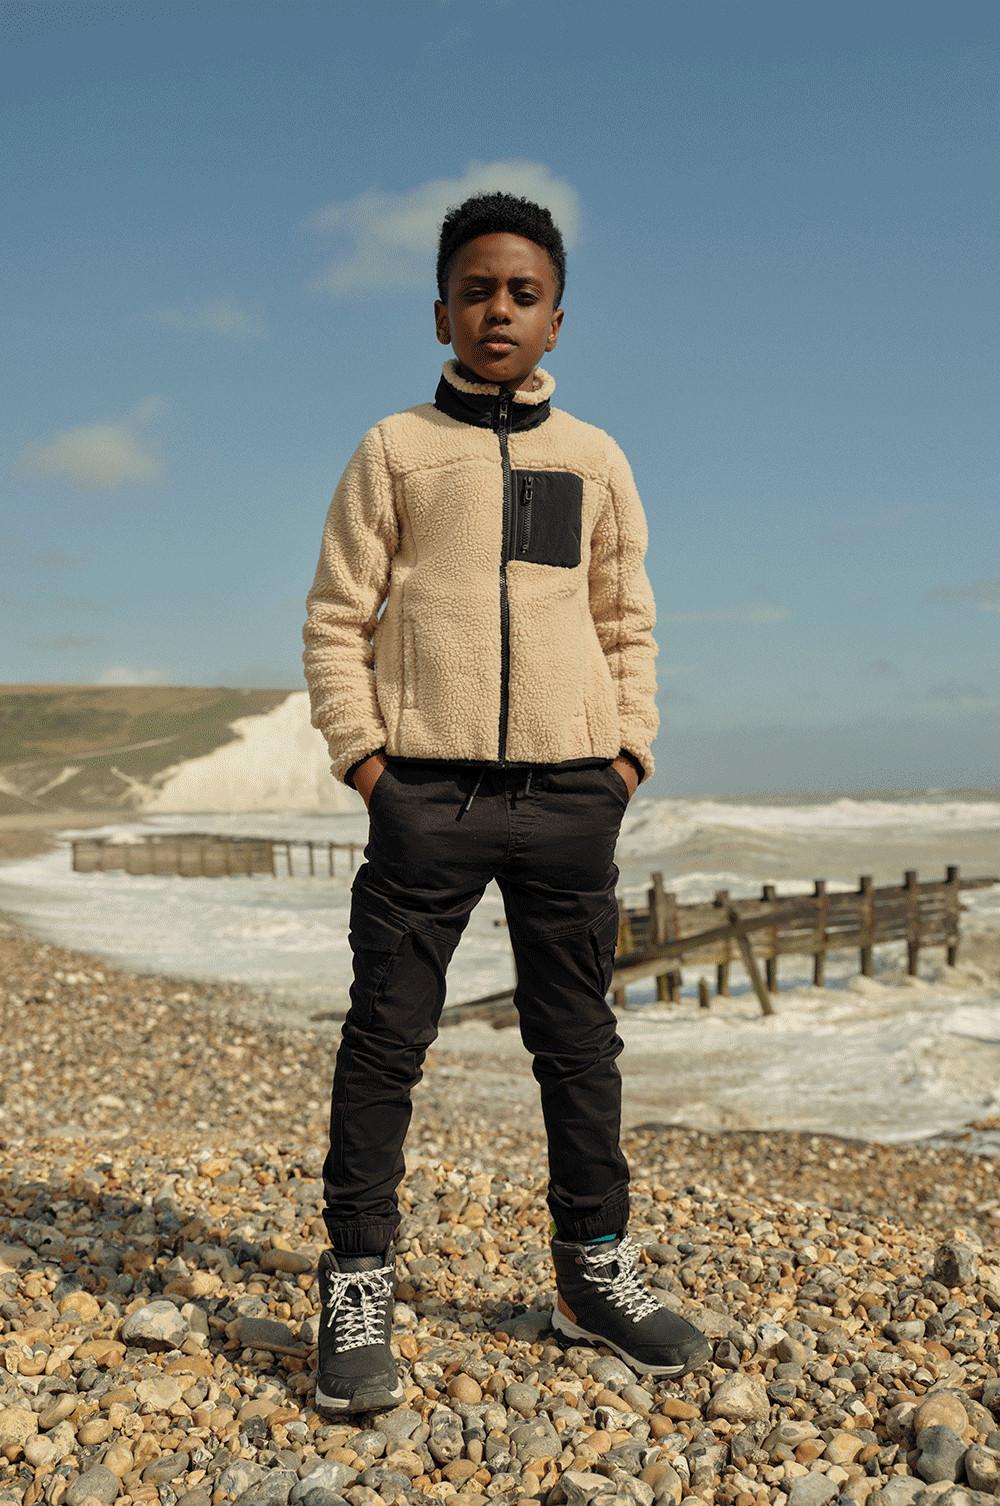 Fant stoji na plaži, oblečen v termo hlače in mucast flis